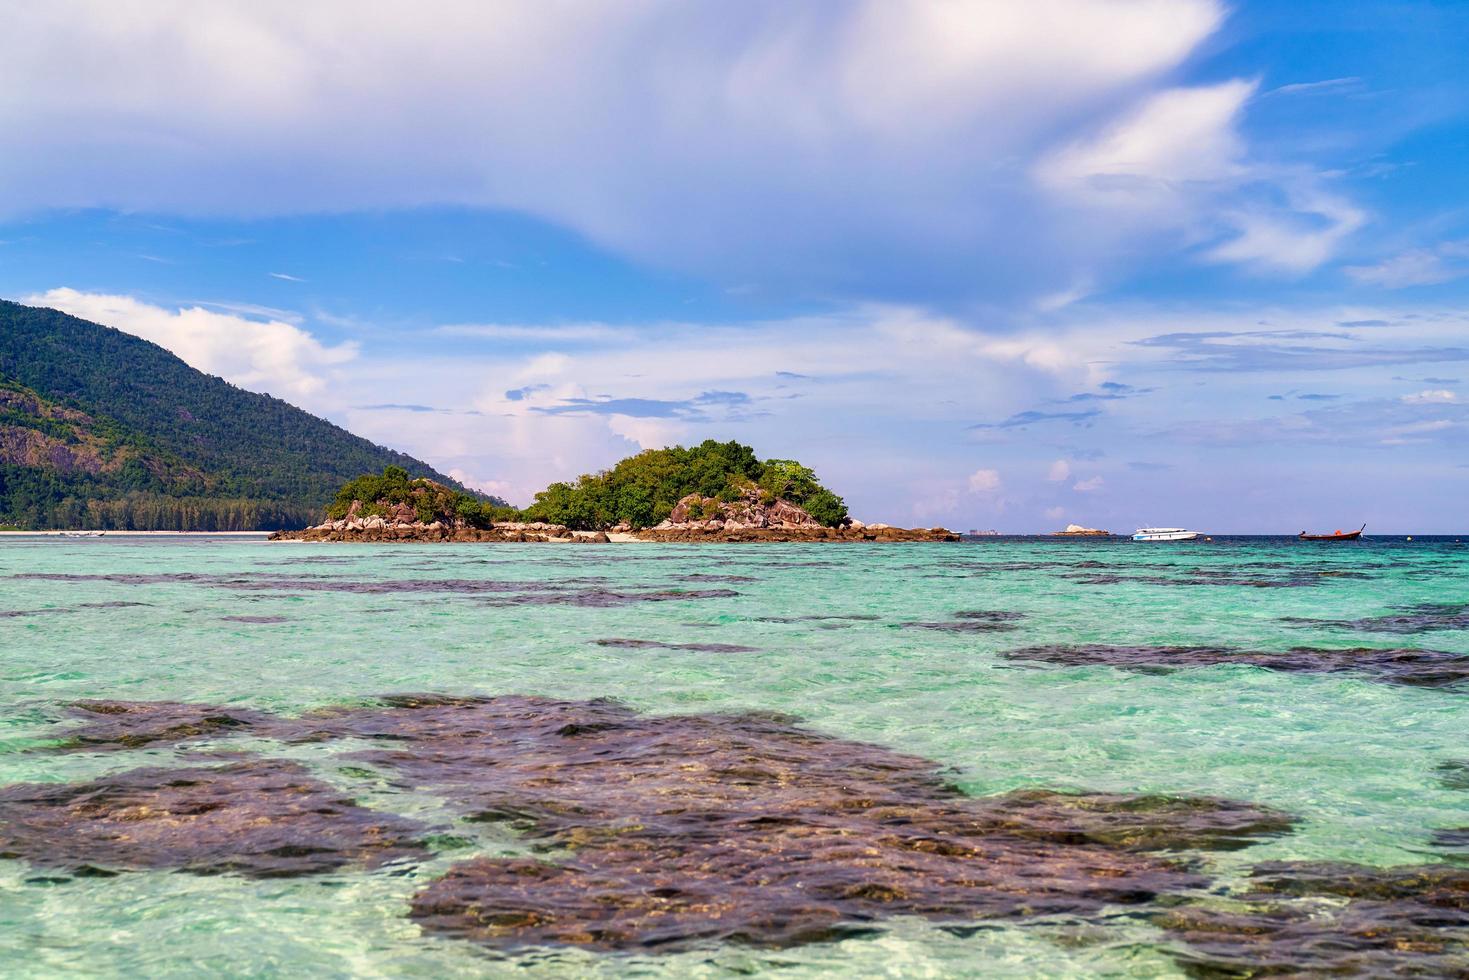 rochas, água, montanhas e céu azul nublado na ilha de Koh Lipe, na Tailândia foto